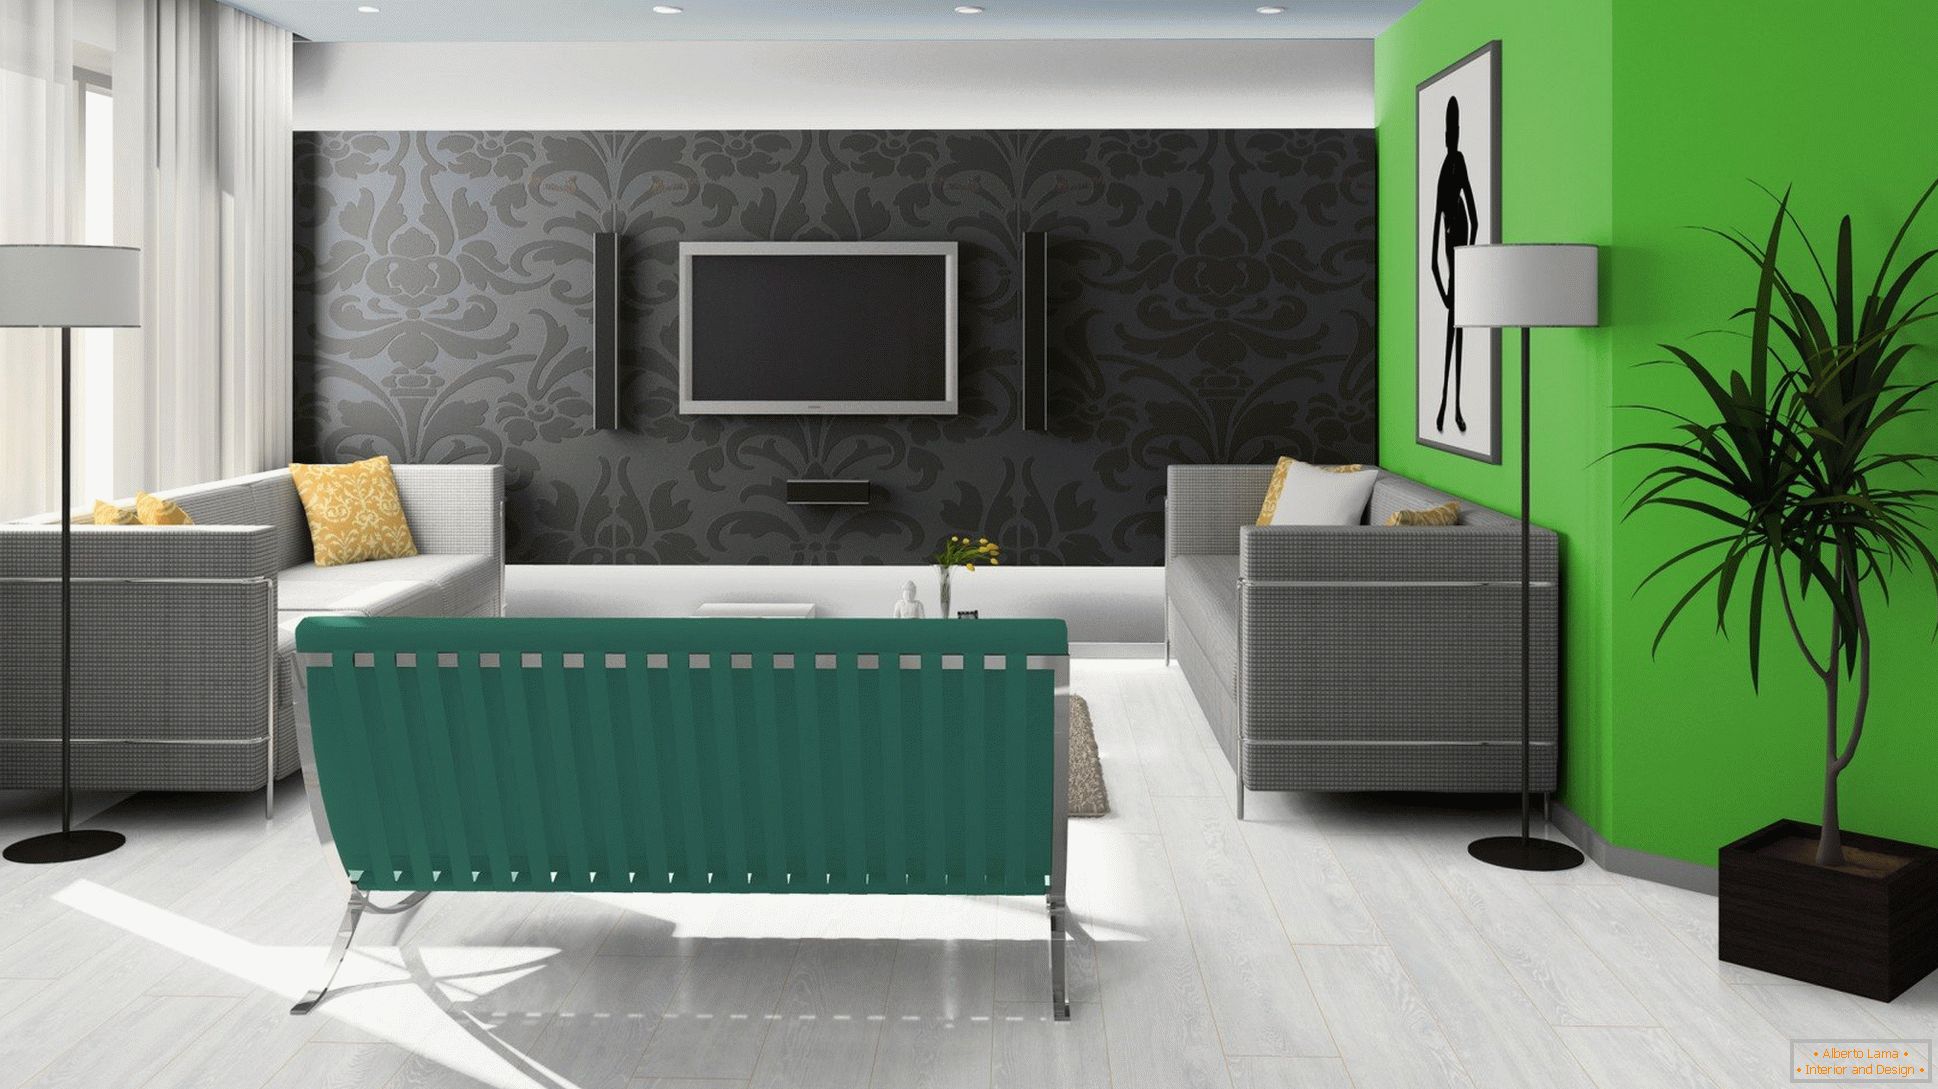 Nero, verde e bianco nel design del salotto